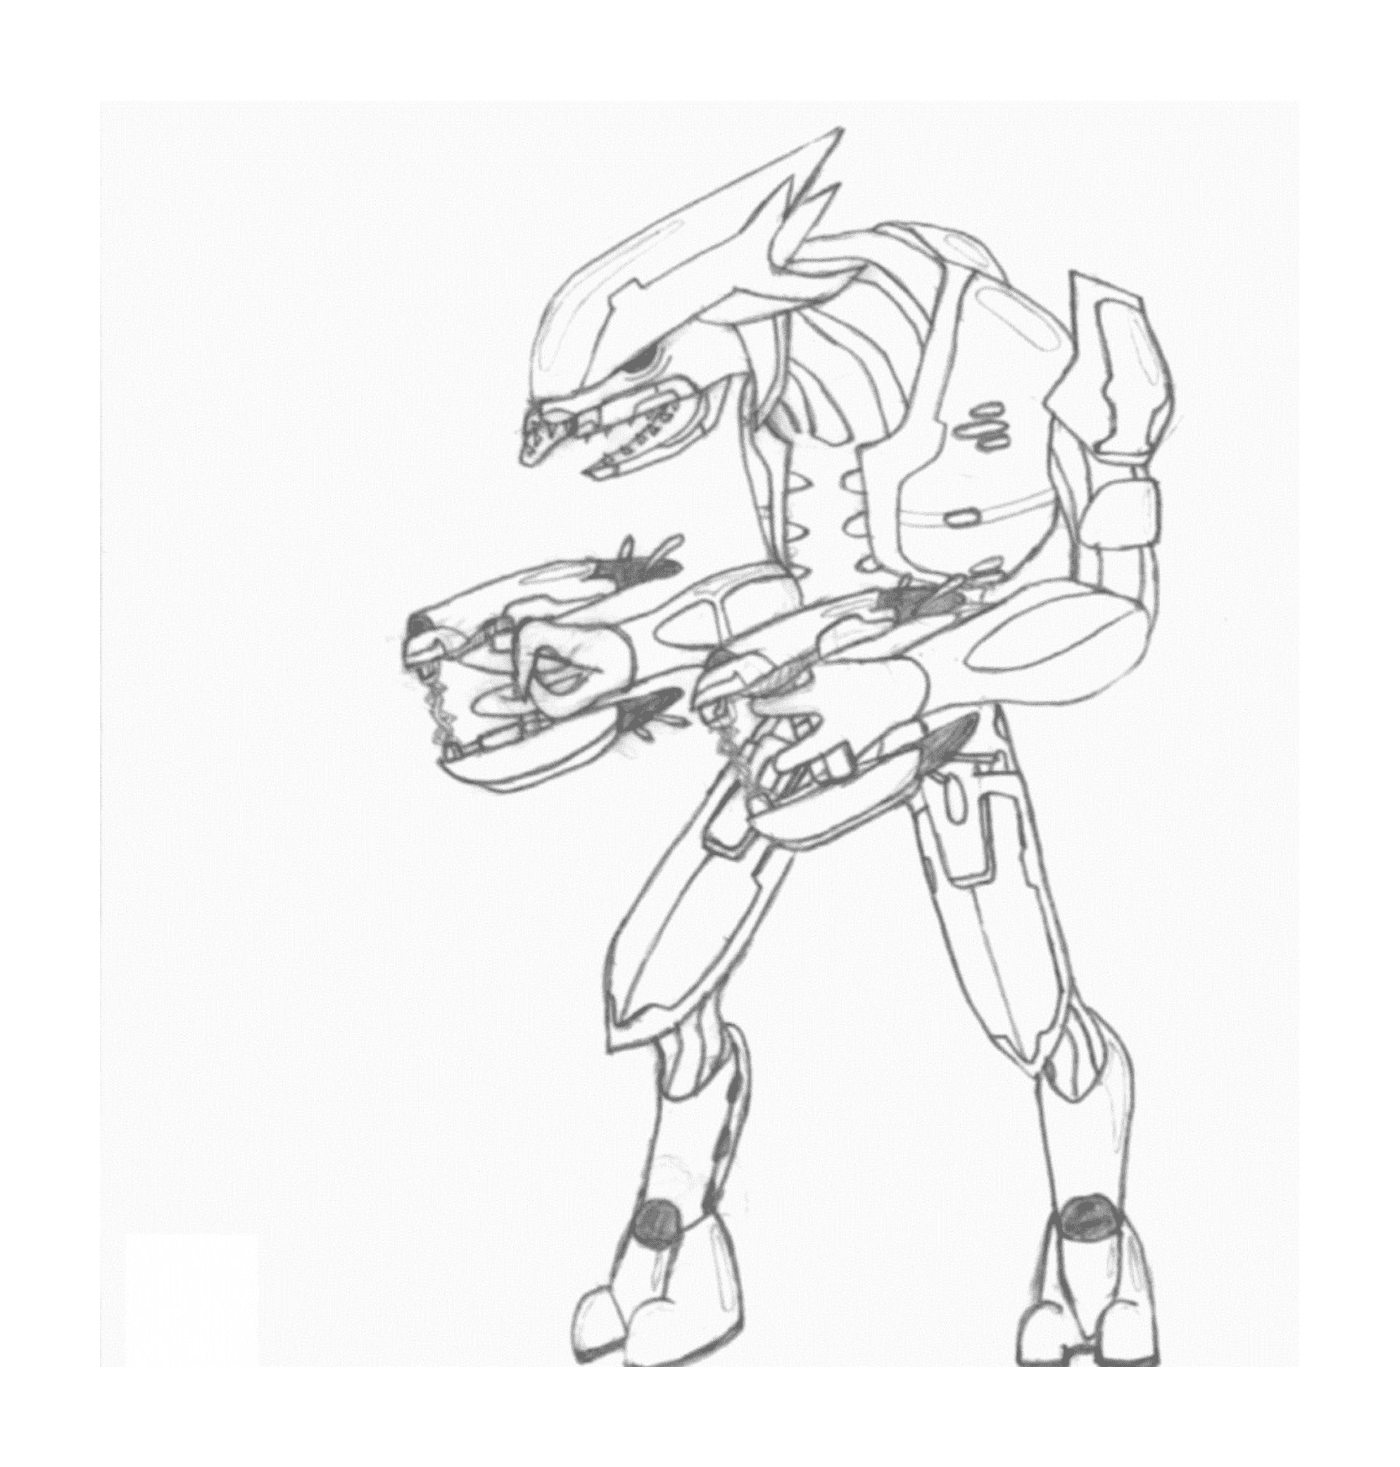  Robot armado con un rifle 